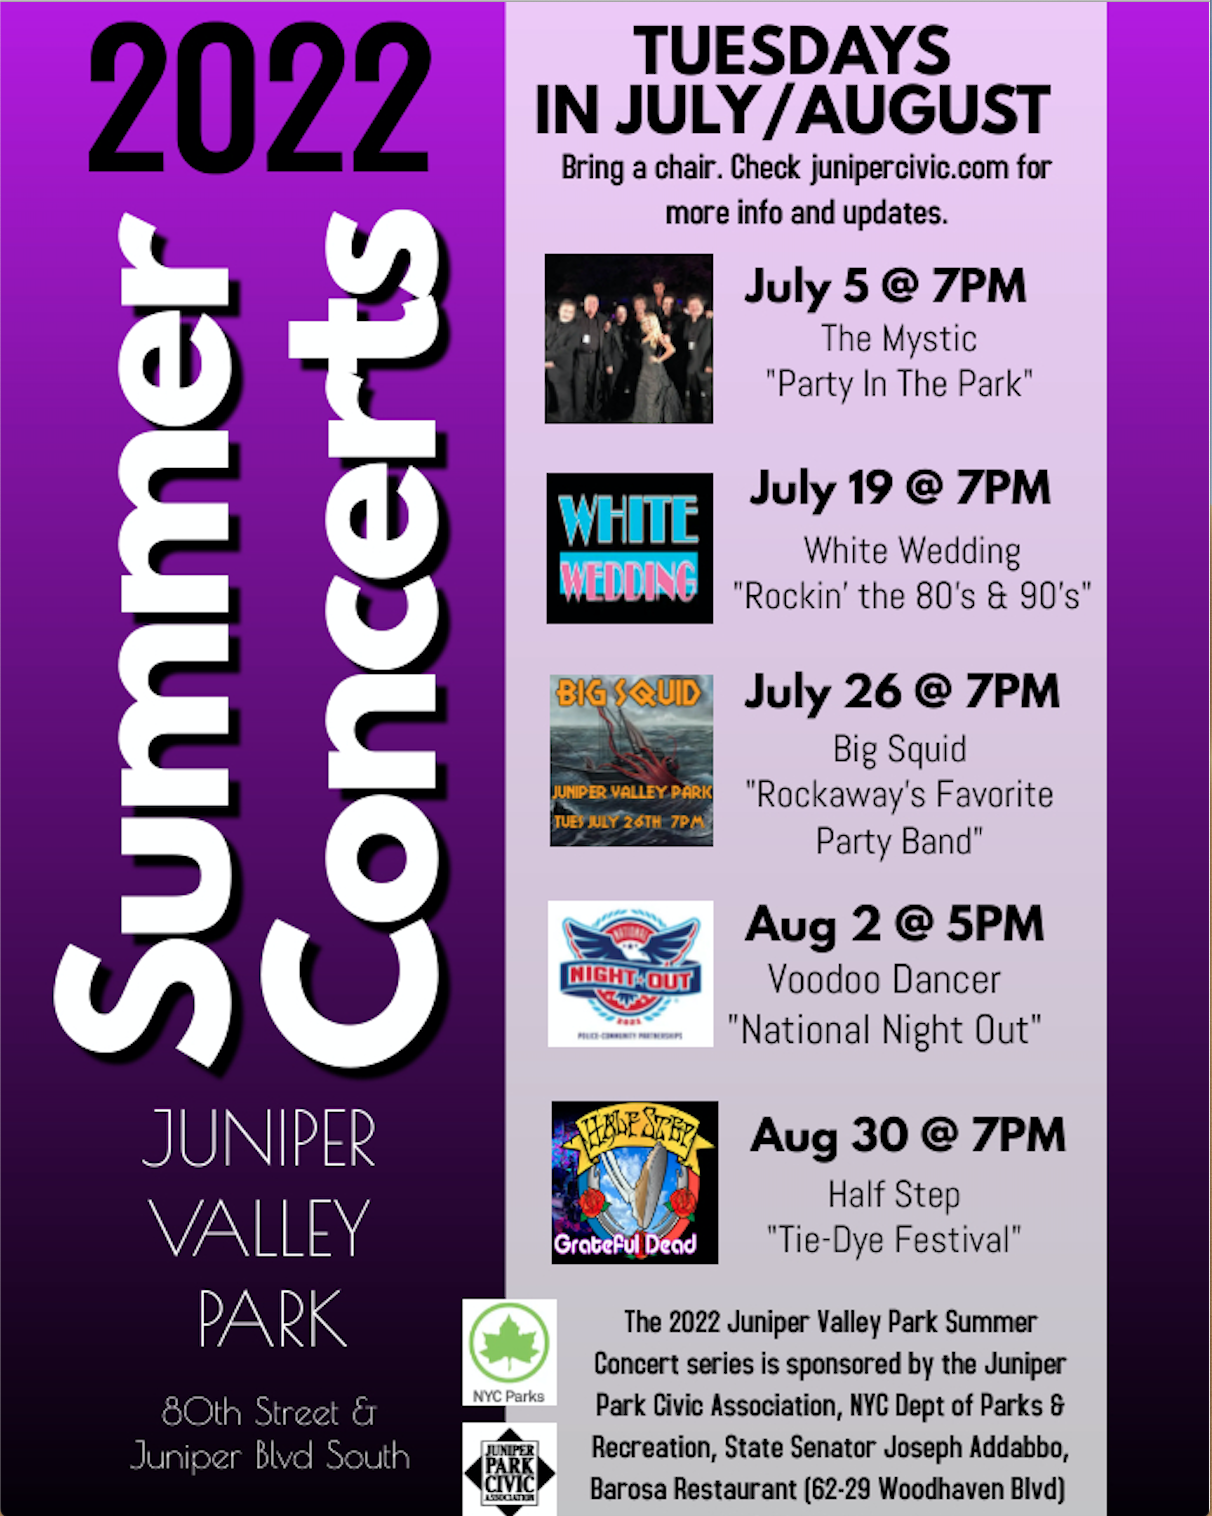 2022 Juniper Valley Park Summer Concerts scheduled